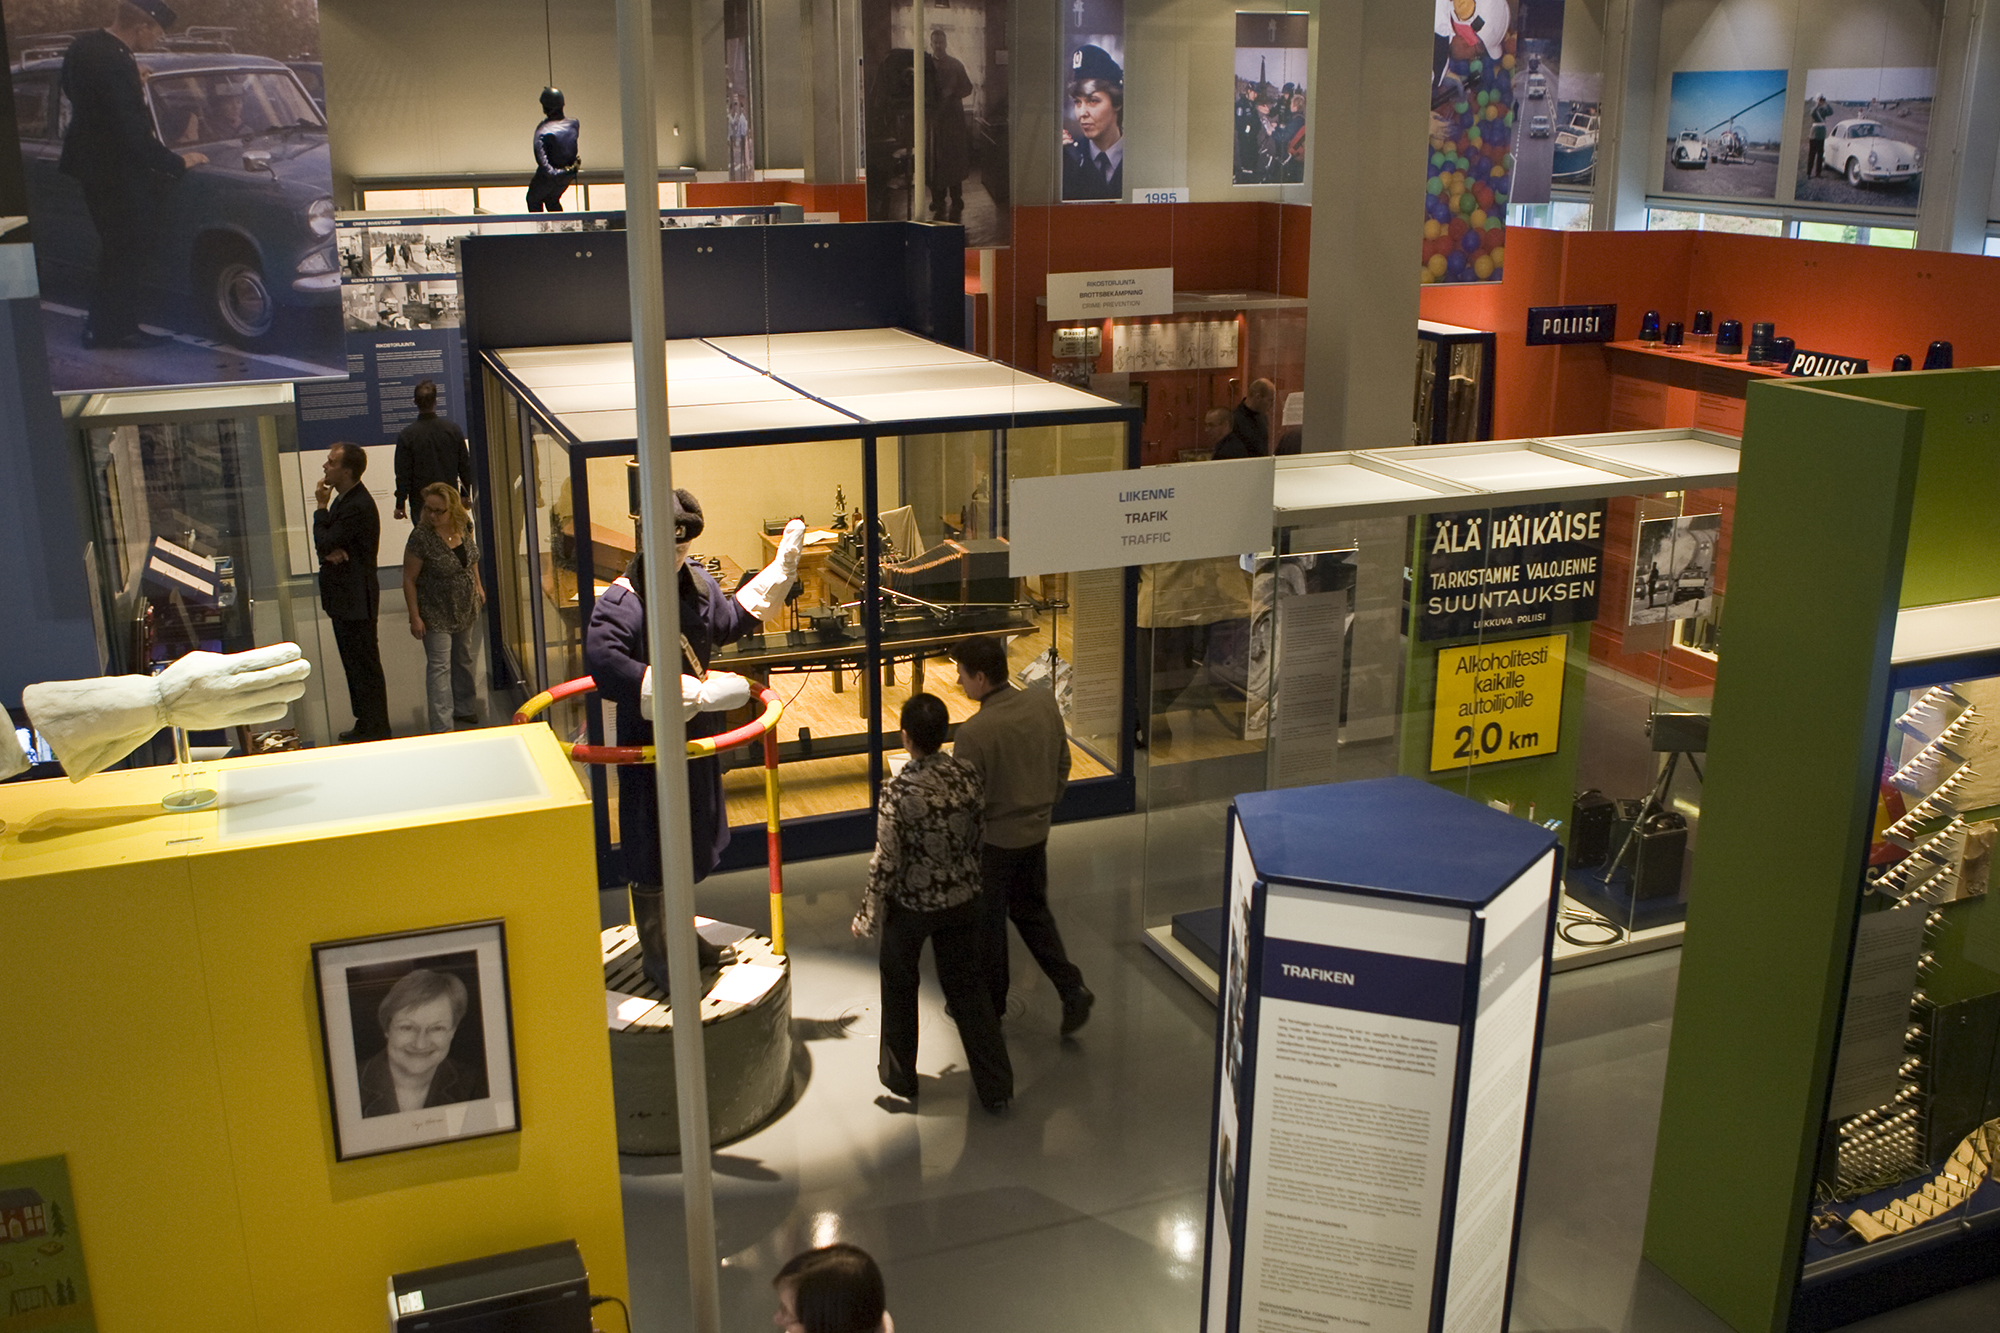 Yleisnäkymä Poliisimuseon näyttelystä. Kuvassa museovierailijoita kiertelemässä vitriinien välissä, tilassa näkyy muun muassa valokuvia ja poliisin työhön liittyviä esineitä. Kuva Poliisimuseo